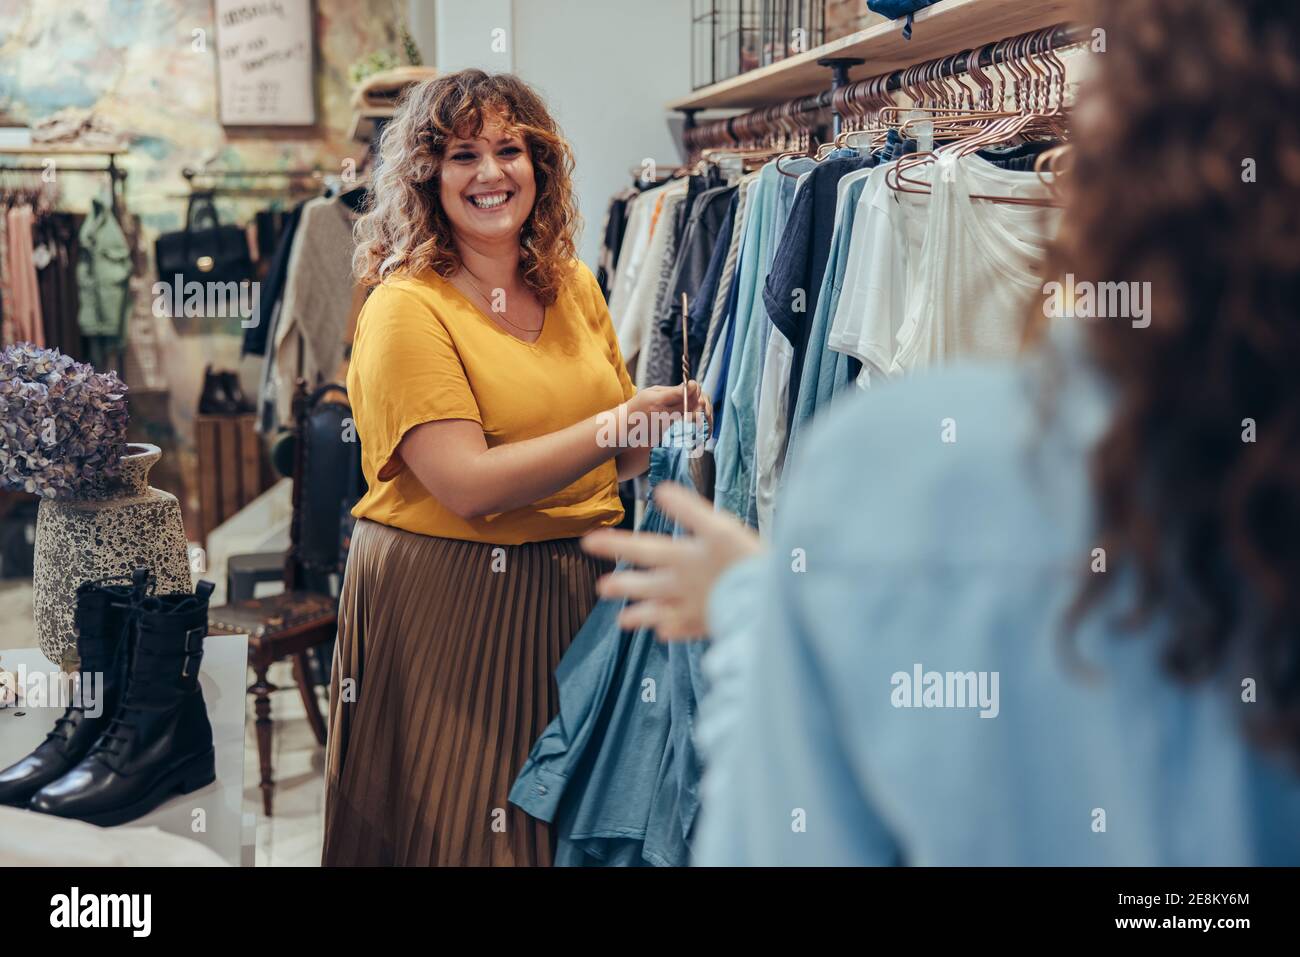 La vendedora femenina ayuda al comprador a elegir entre vestidos para comprar en la tienda de moda. Propietario de la tienda de ropa que ayuda al cliente en su tienda. Foto de stock